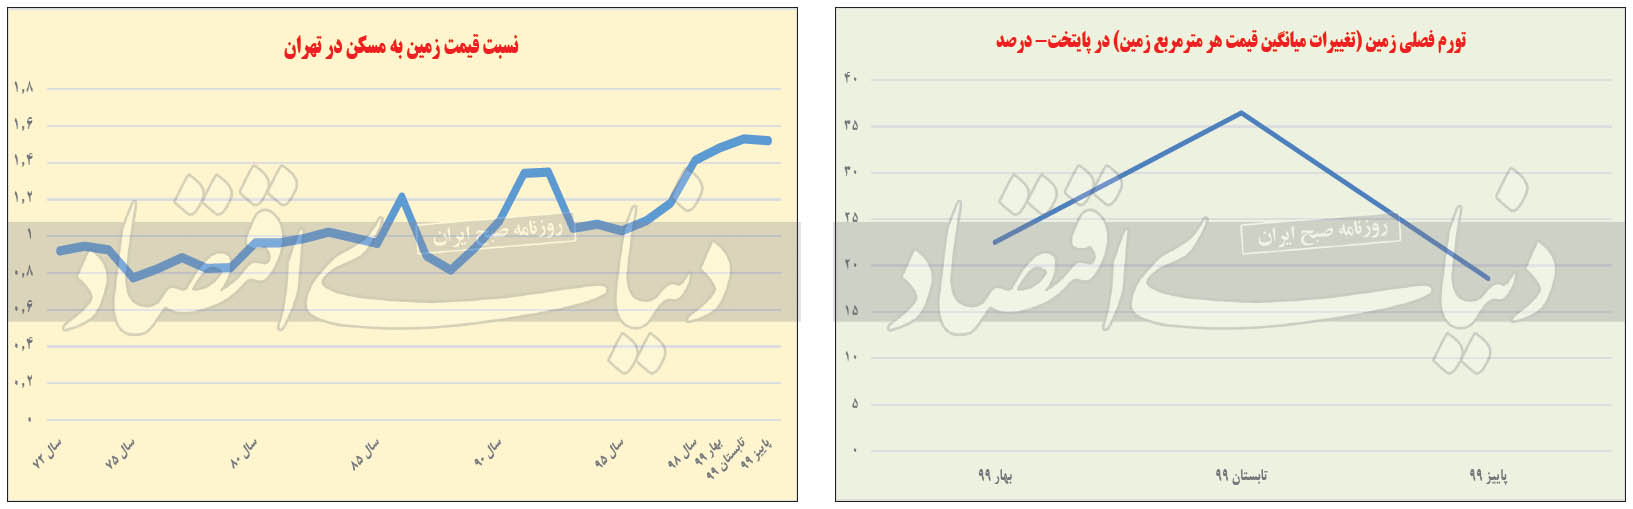 نمودار تغییرات قیمت زمین در تهران